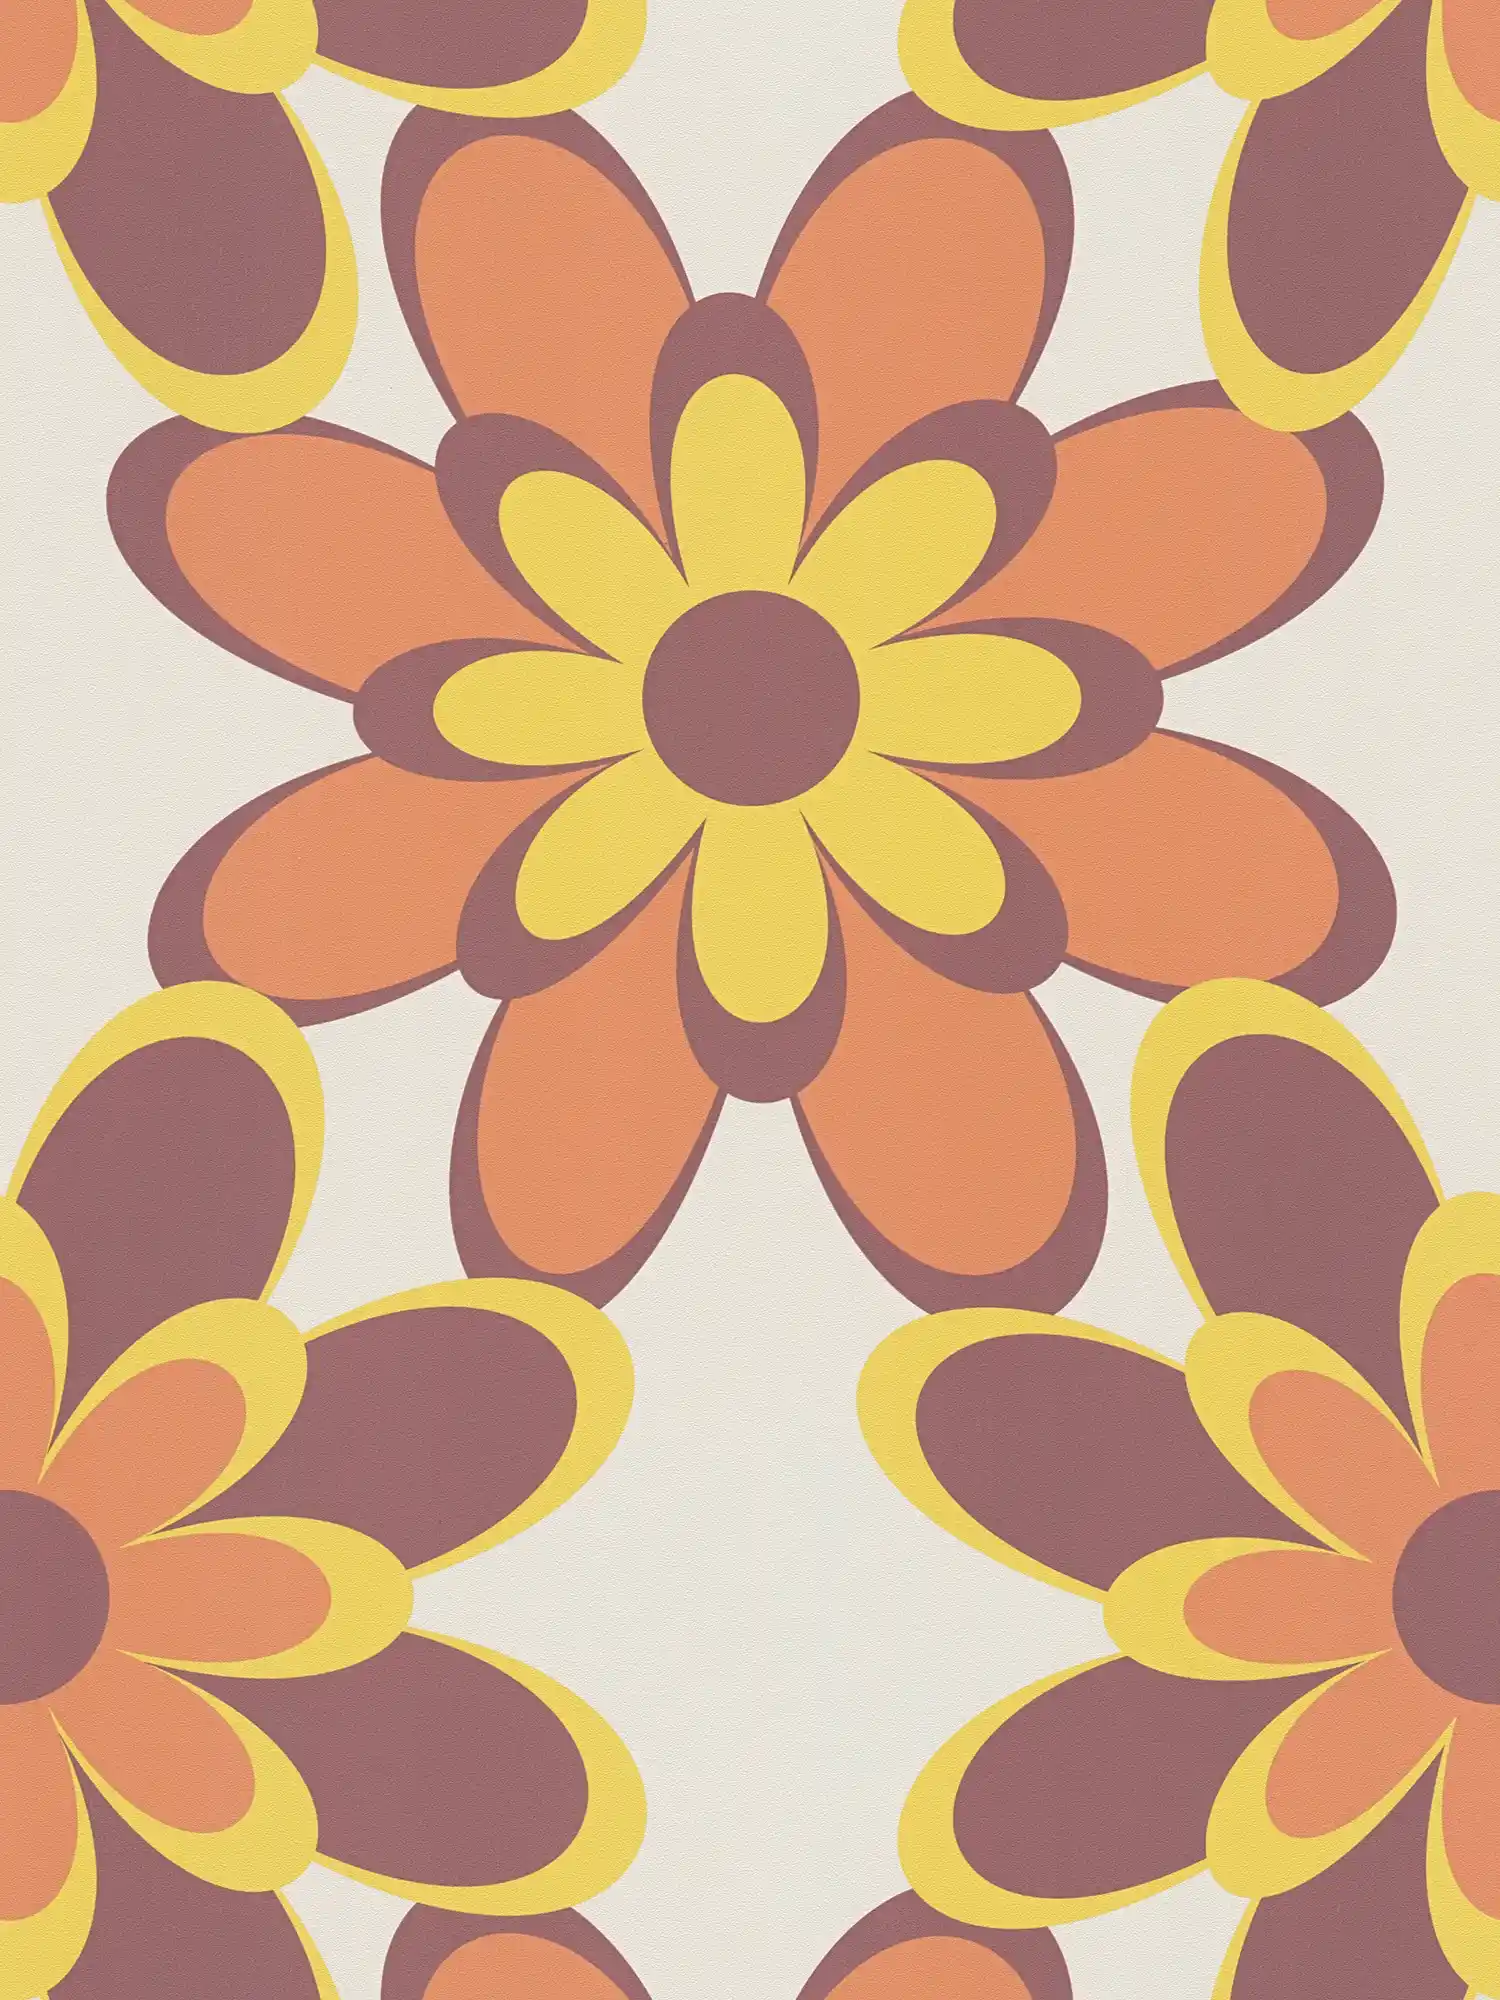         Retro behang 70s bloemenpatroon - oranje, geel, bruin
    